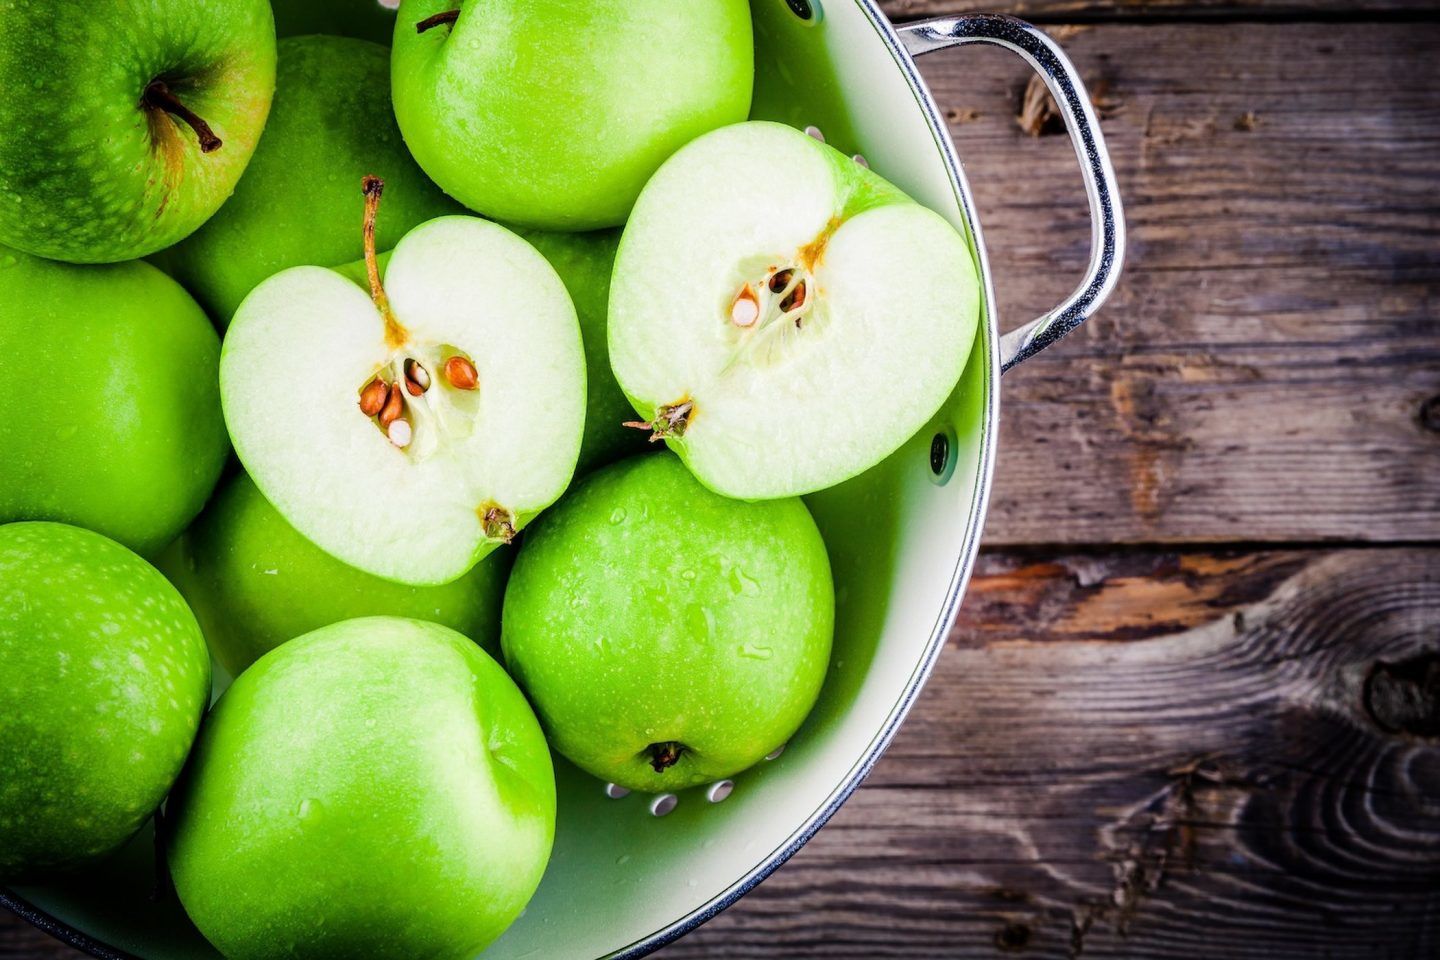 كل ما تريد معرفته عن التفاح: فوائده الصحية، الحقائق الغذائية، و تاريخه